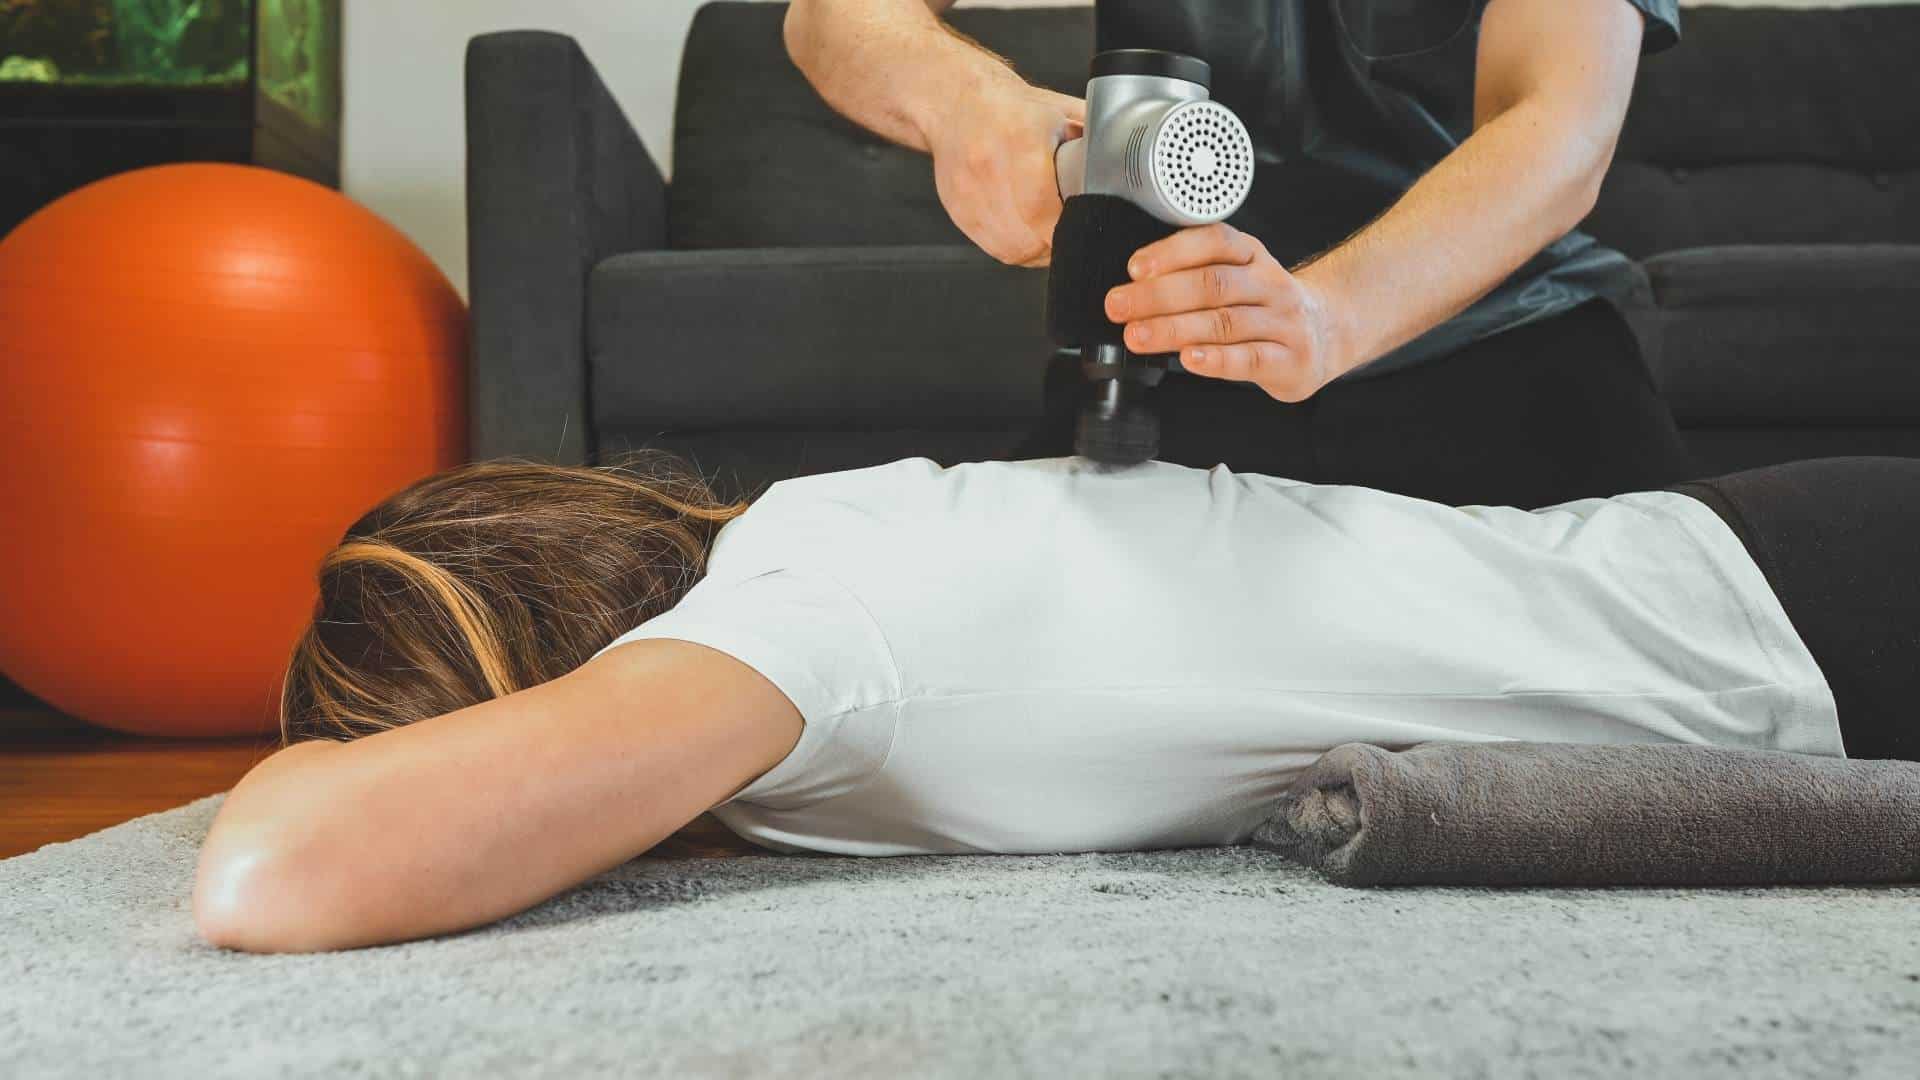 massage therapist using a percussion massage gun on back